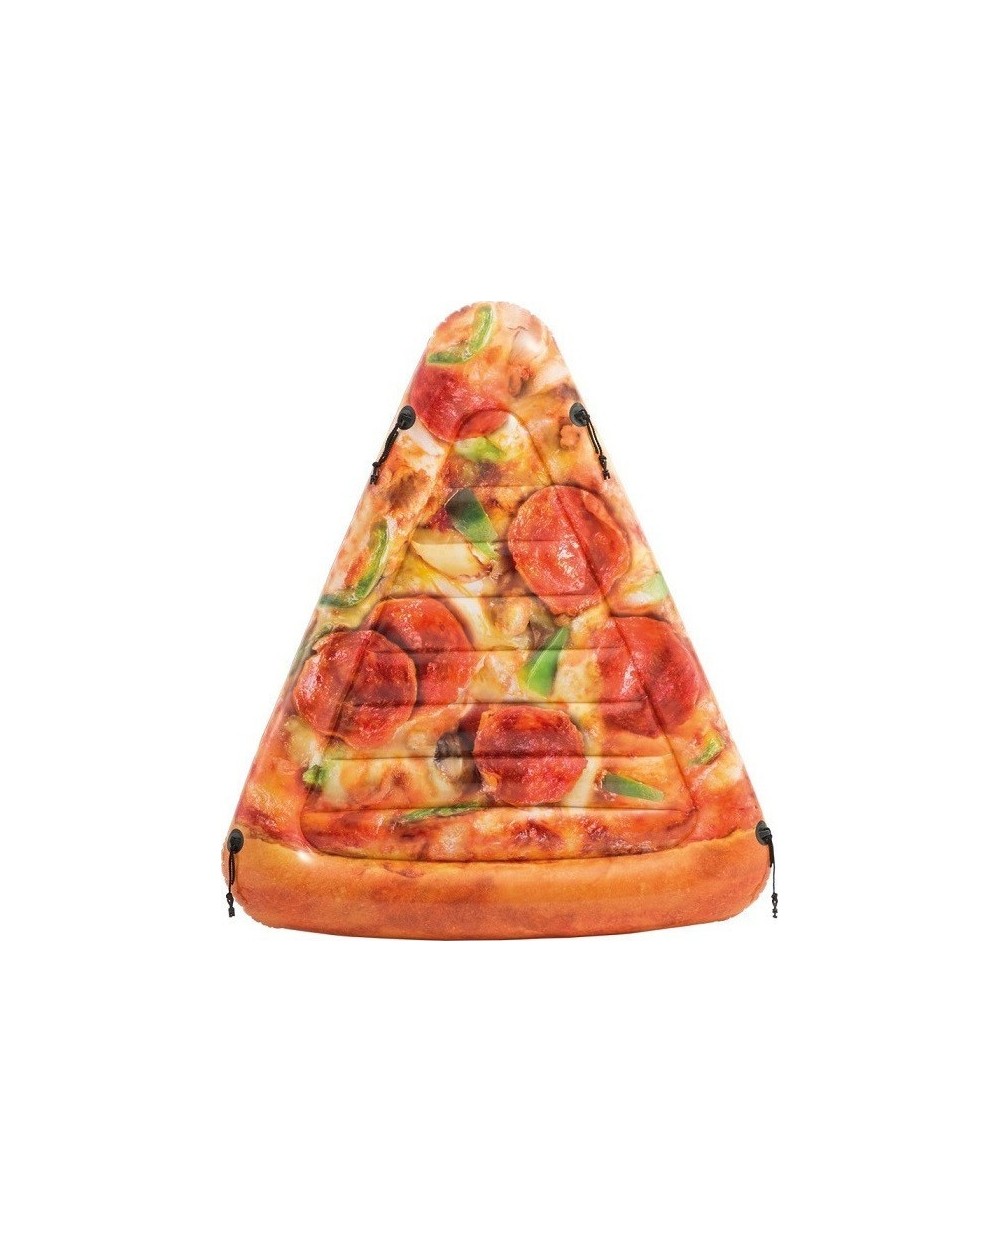 Φουσκωτό Στρώμα Κομμάτι Pizza 175x145 INTEX 58752